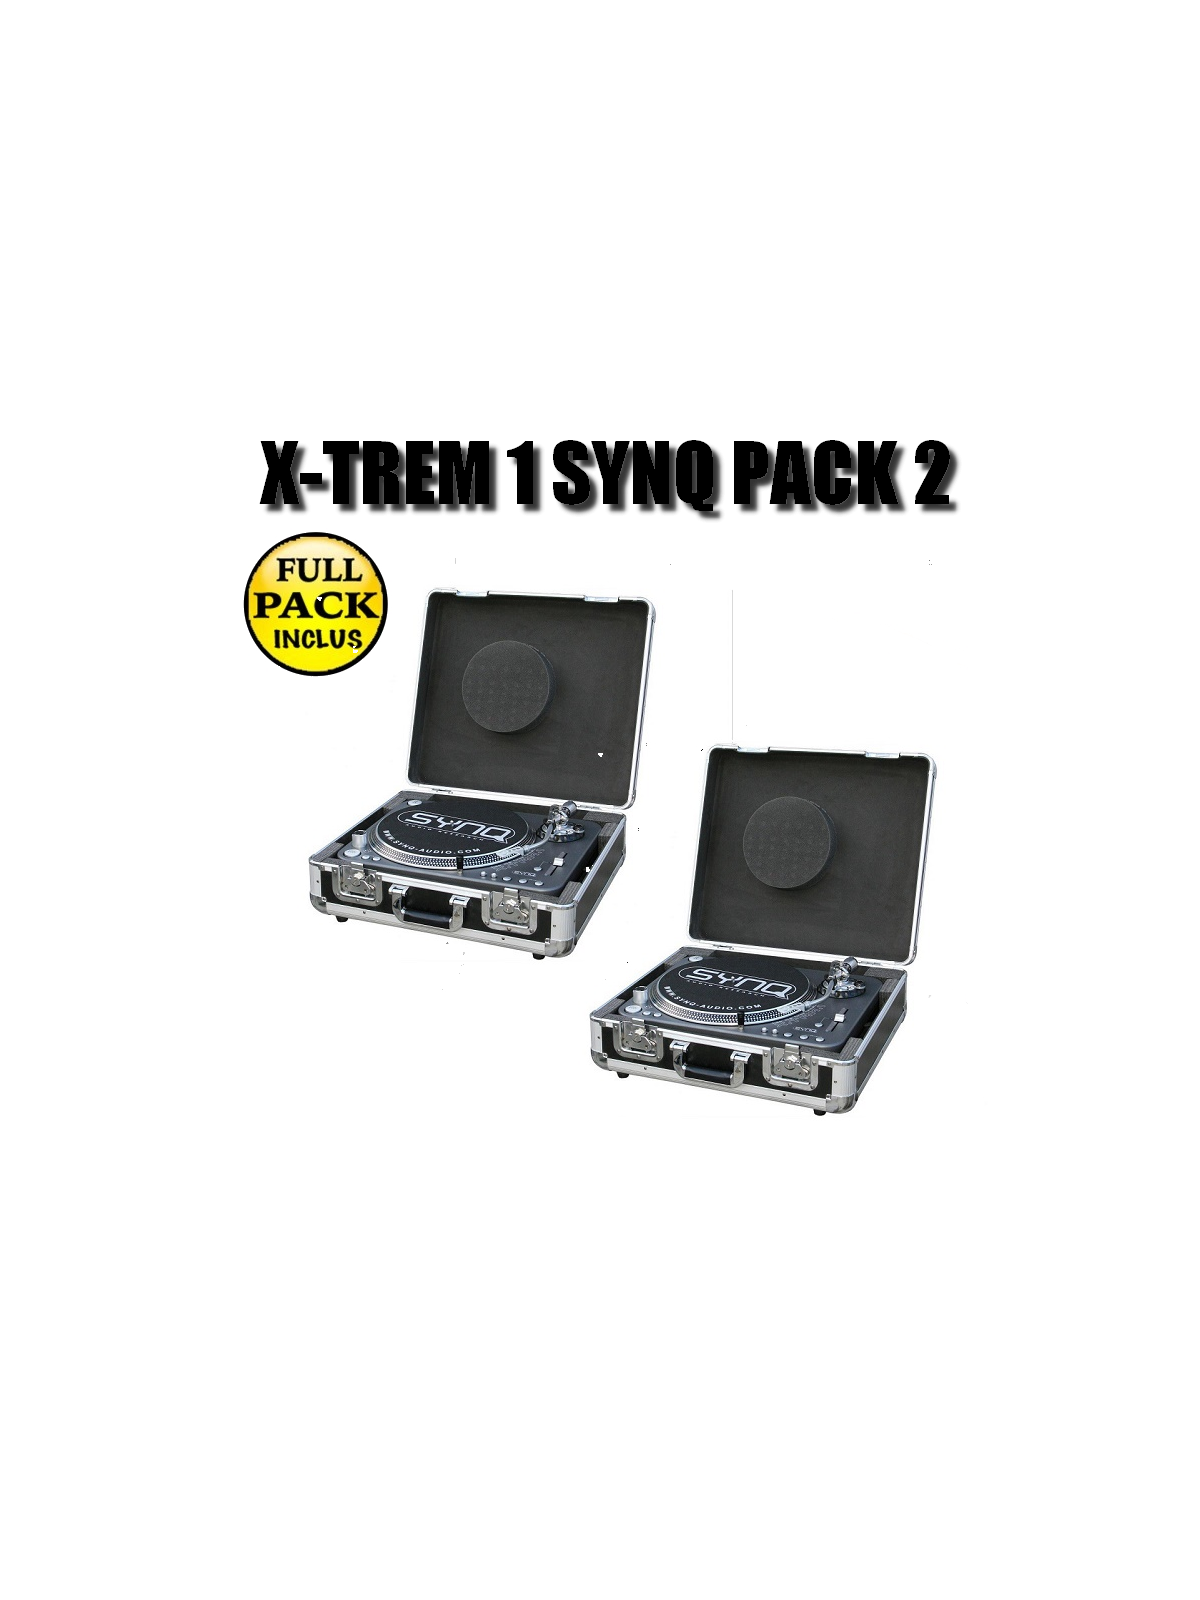 Synq X-TREM 1 PACK 2